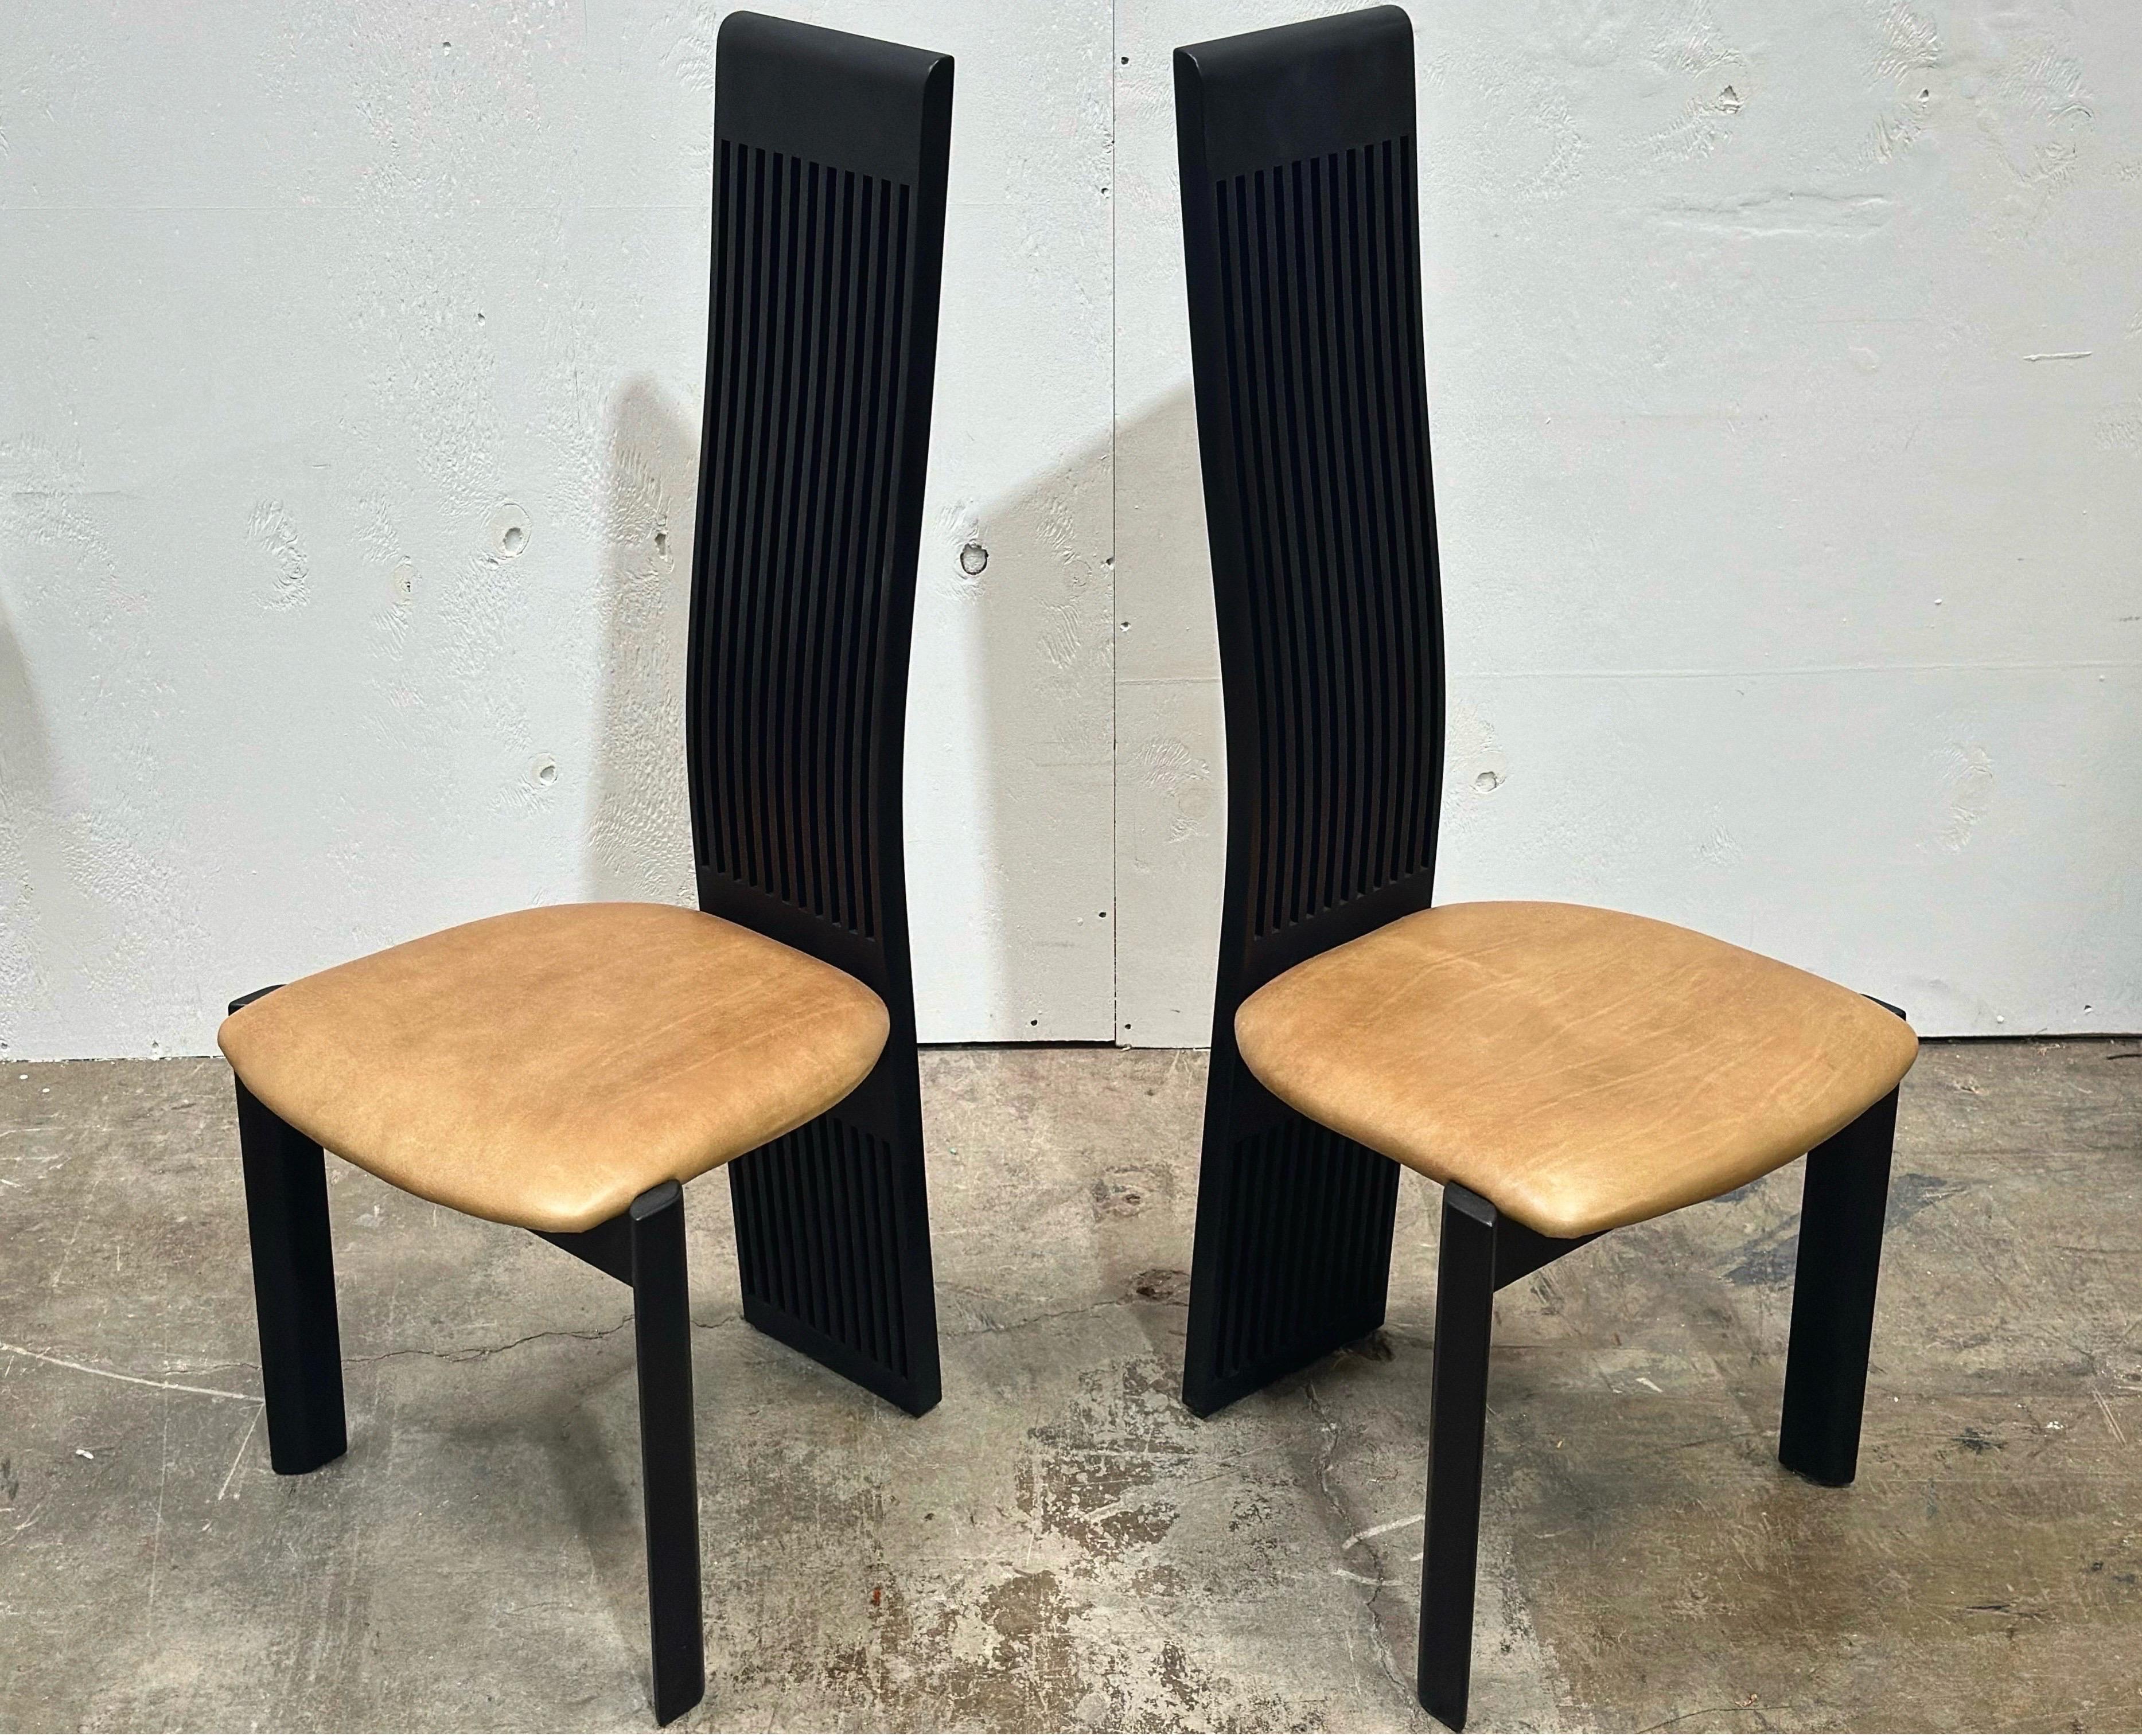 Une paire / un ensemble de deux chaises de salle à manger post-moderne à haut dossier de Pietro Costantini avec des dossiers à lattes exagérées et des sièges en cuir.

Construit en bois de hêtre massif avec une finition laquée noire semi-brillante,